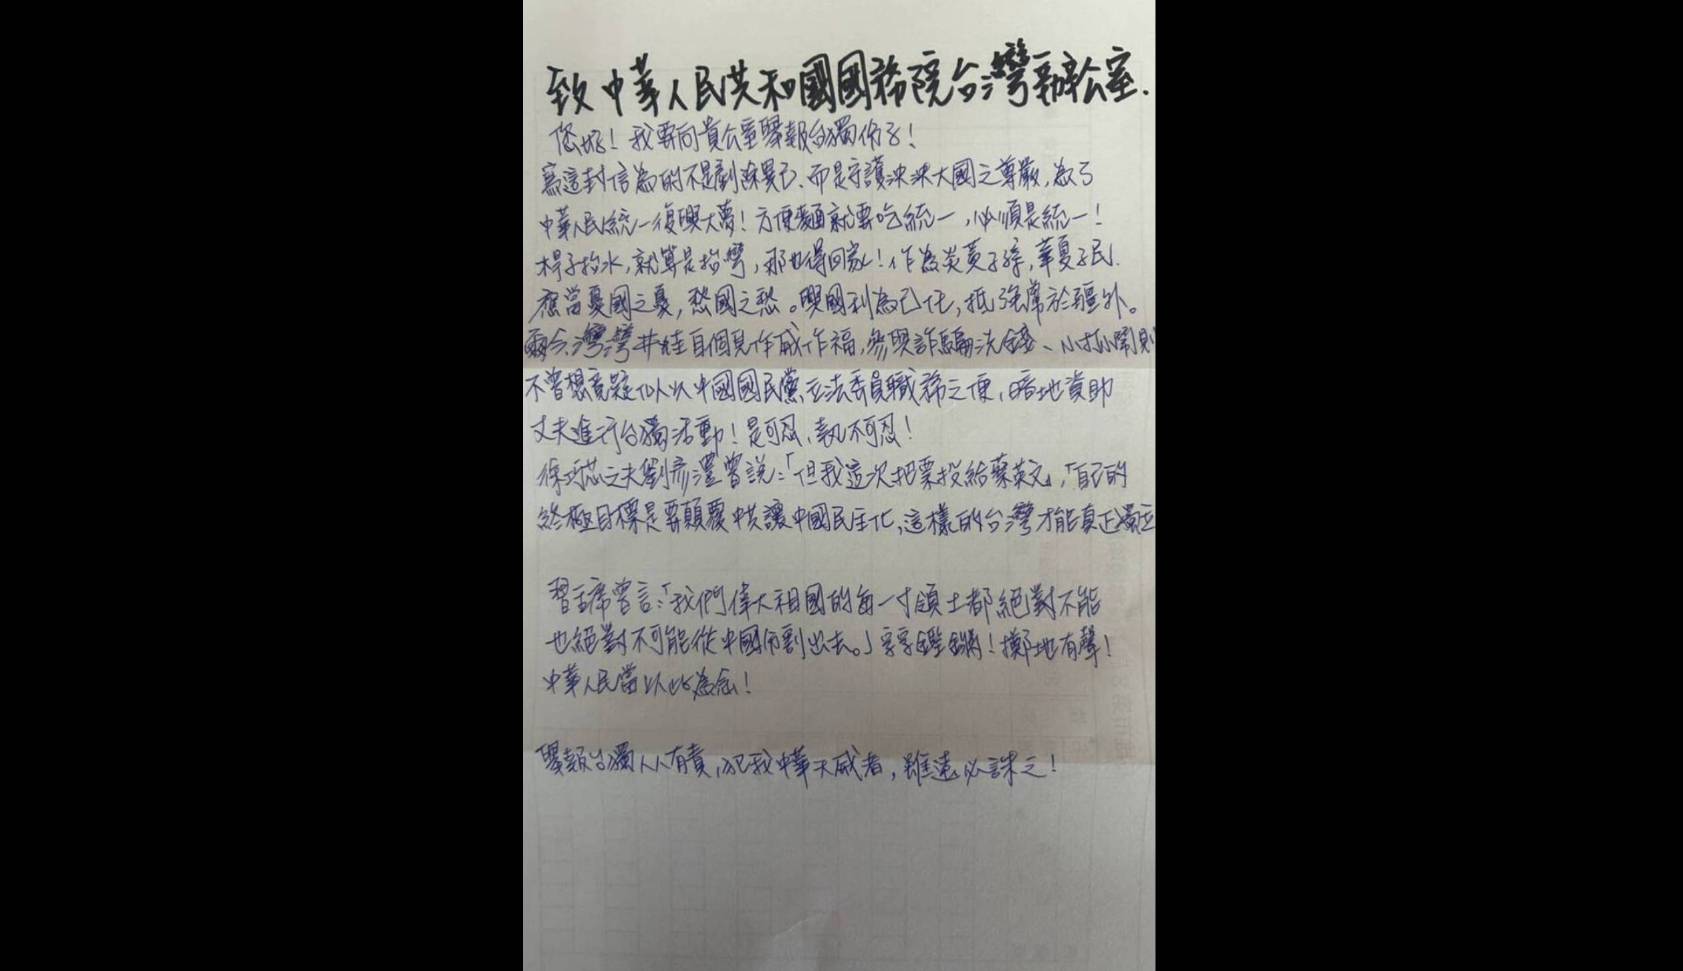 台灣基進高雄黨部執行長楊佩樺2日寫給國台辦的舉報信。圖/台灣基進提供